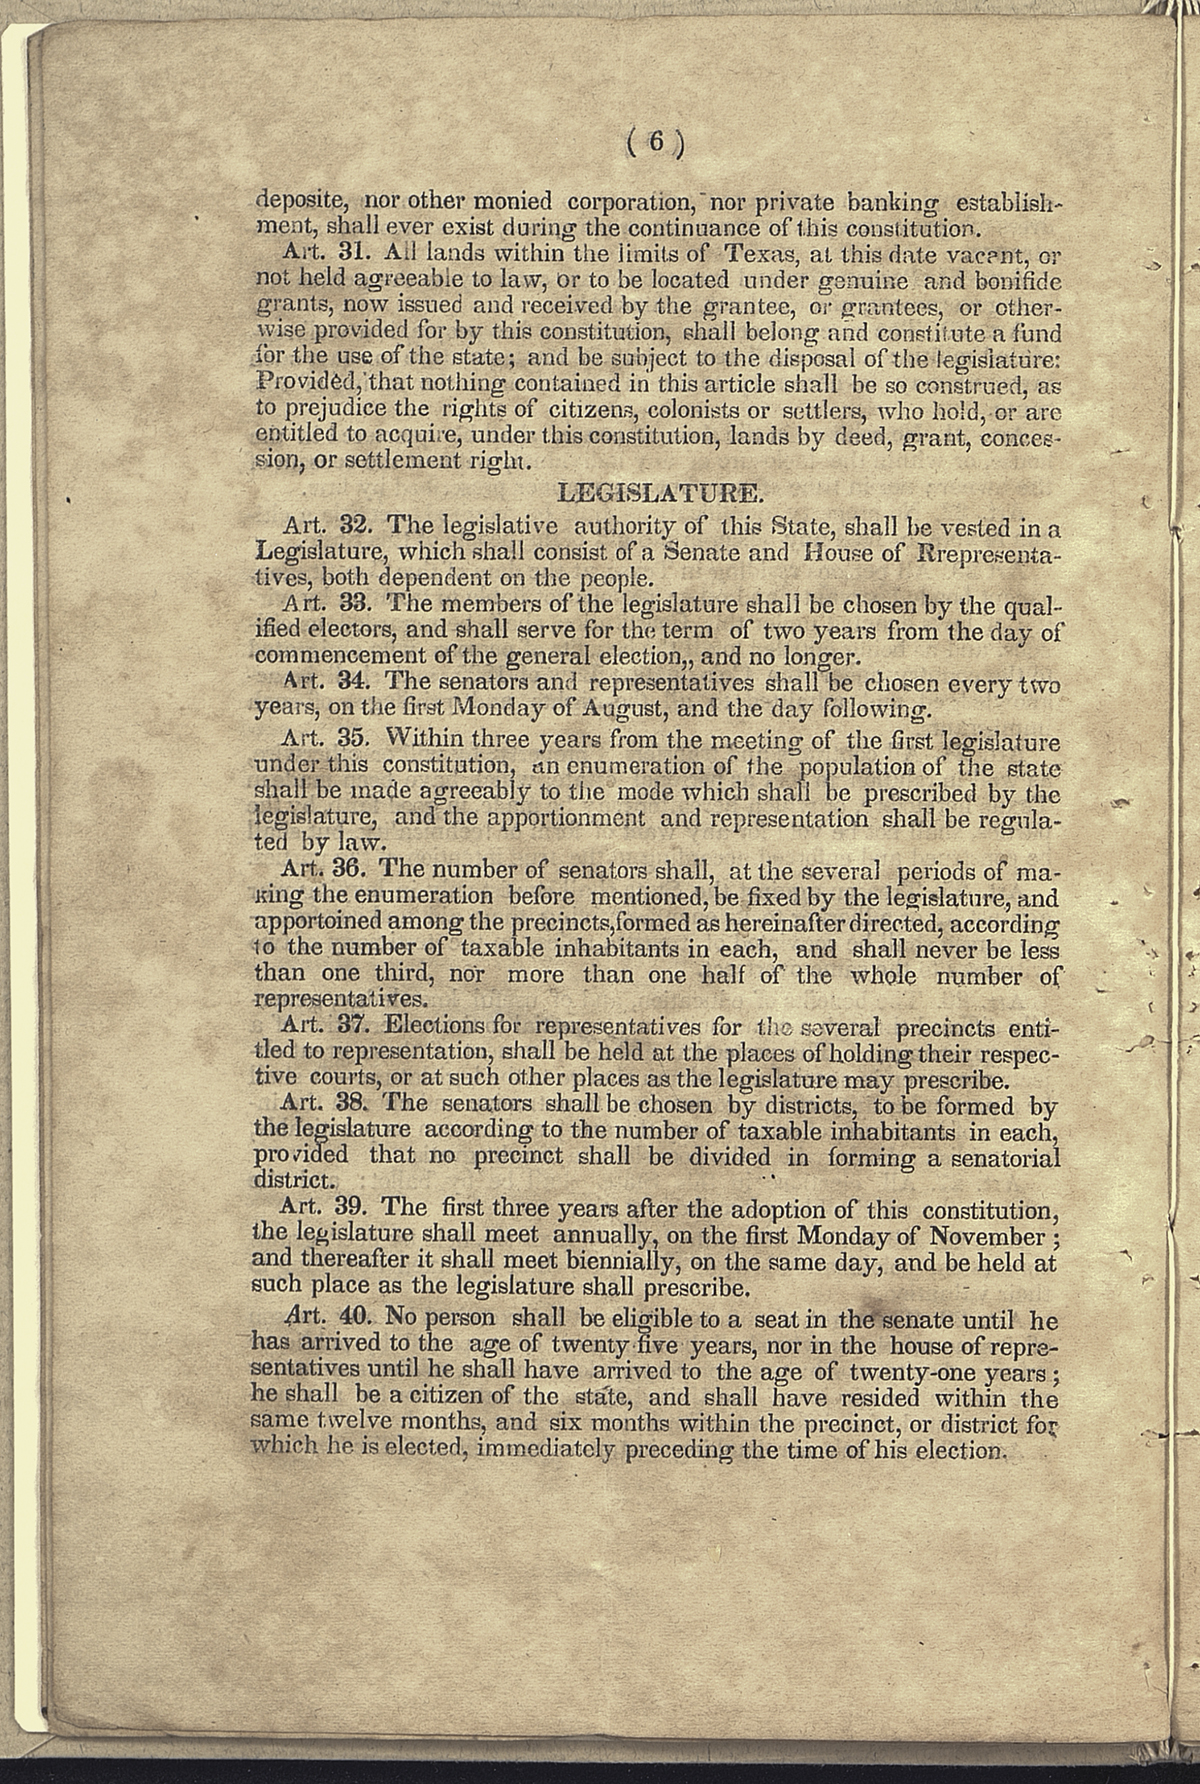 Legislature, Articles 32-40